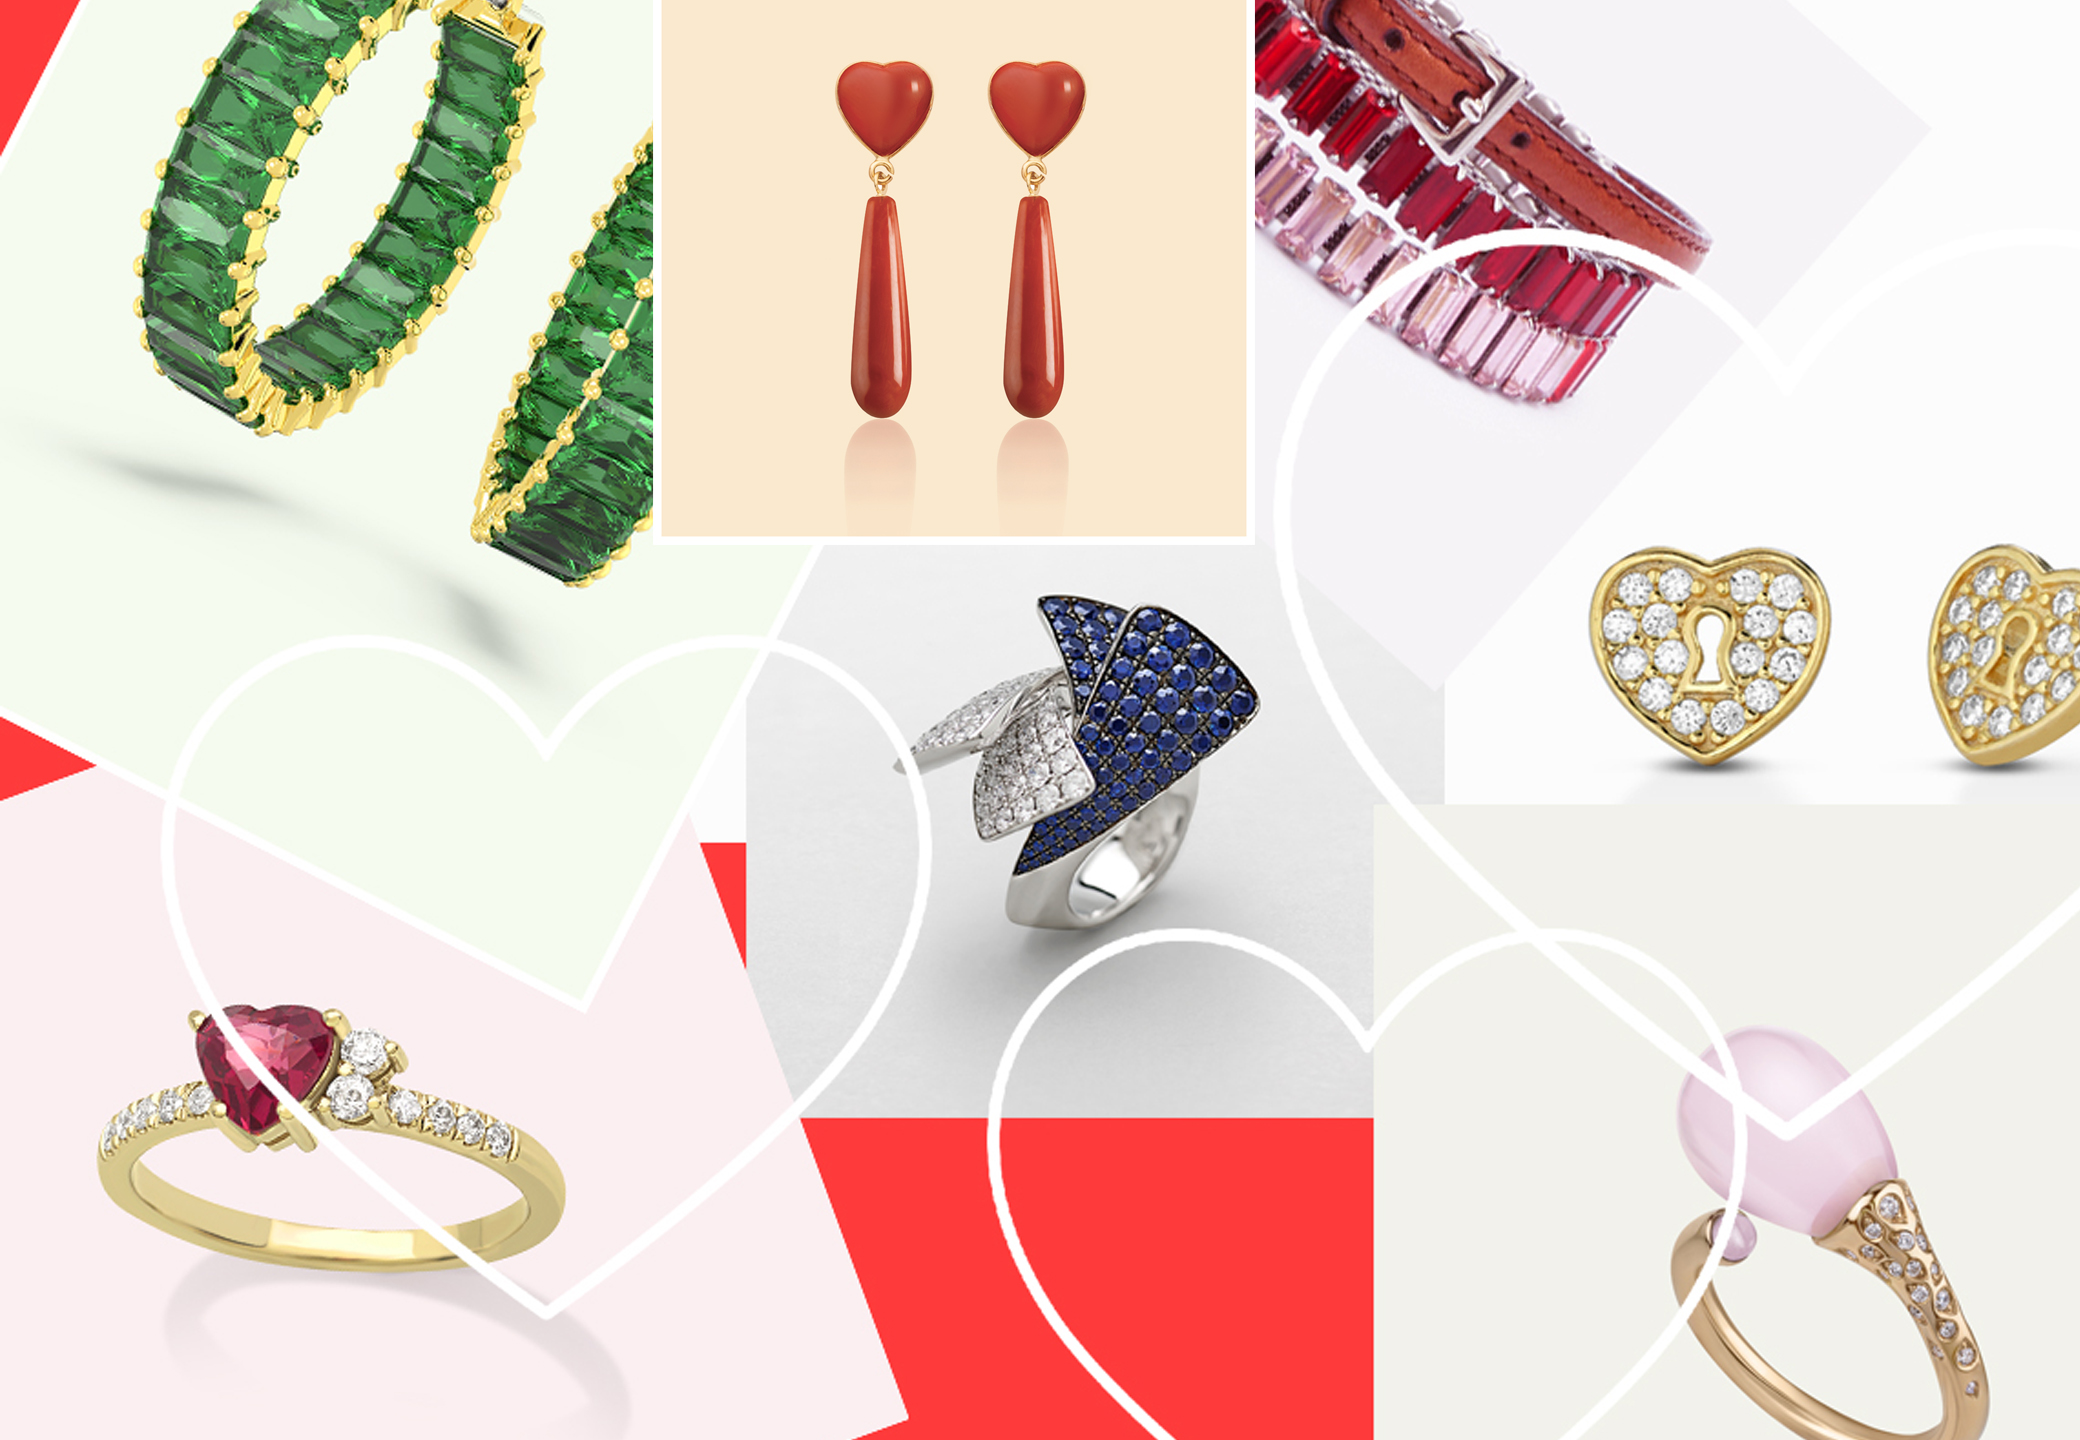 Oro, cuori e diamanti, con quale regalo la sorprenderai a San Valentino?